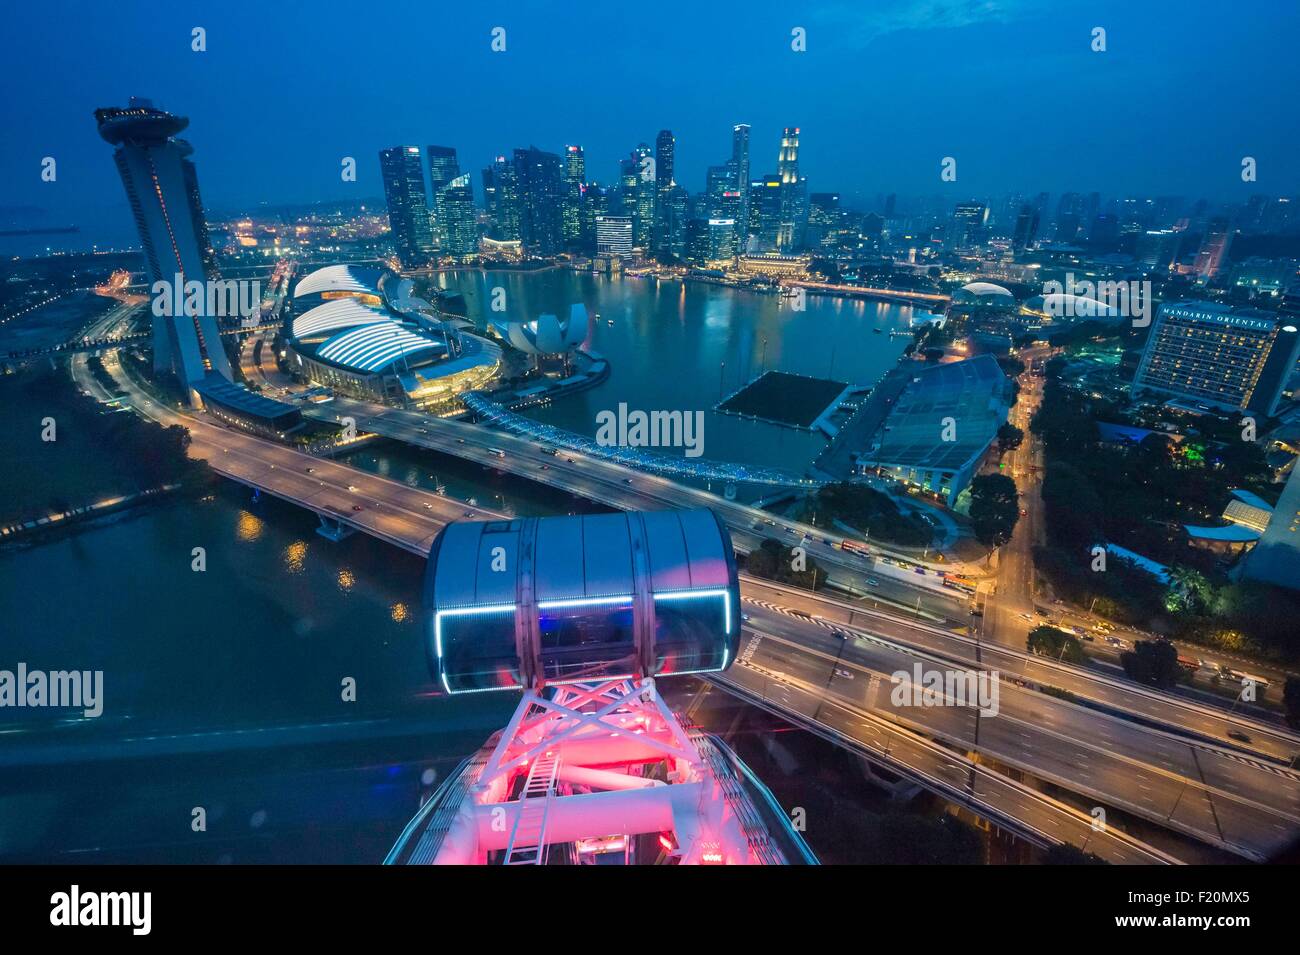 Singapore, Marina Bay, Singapore Flyer Stock Photo